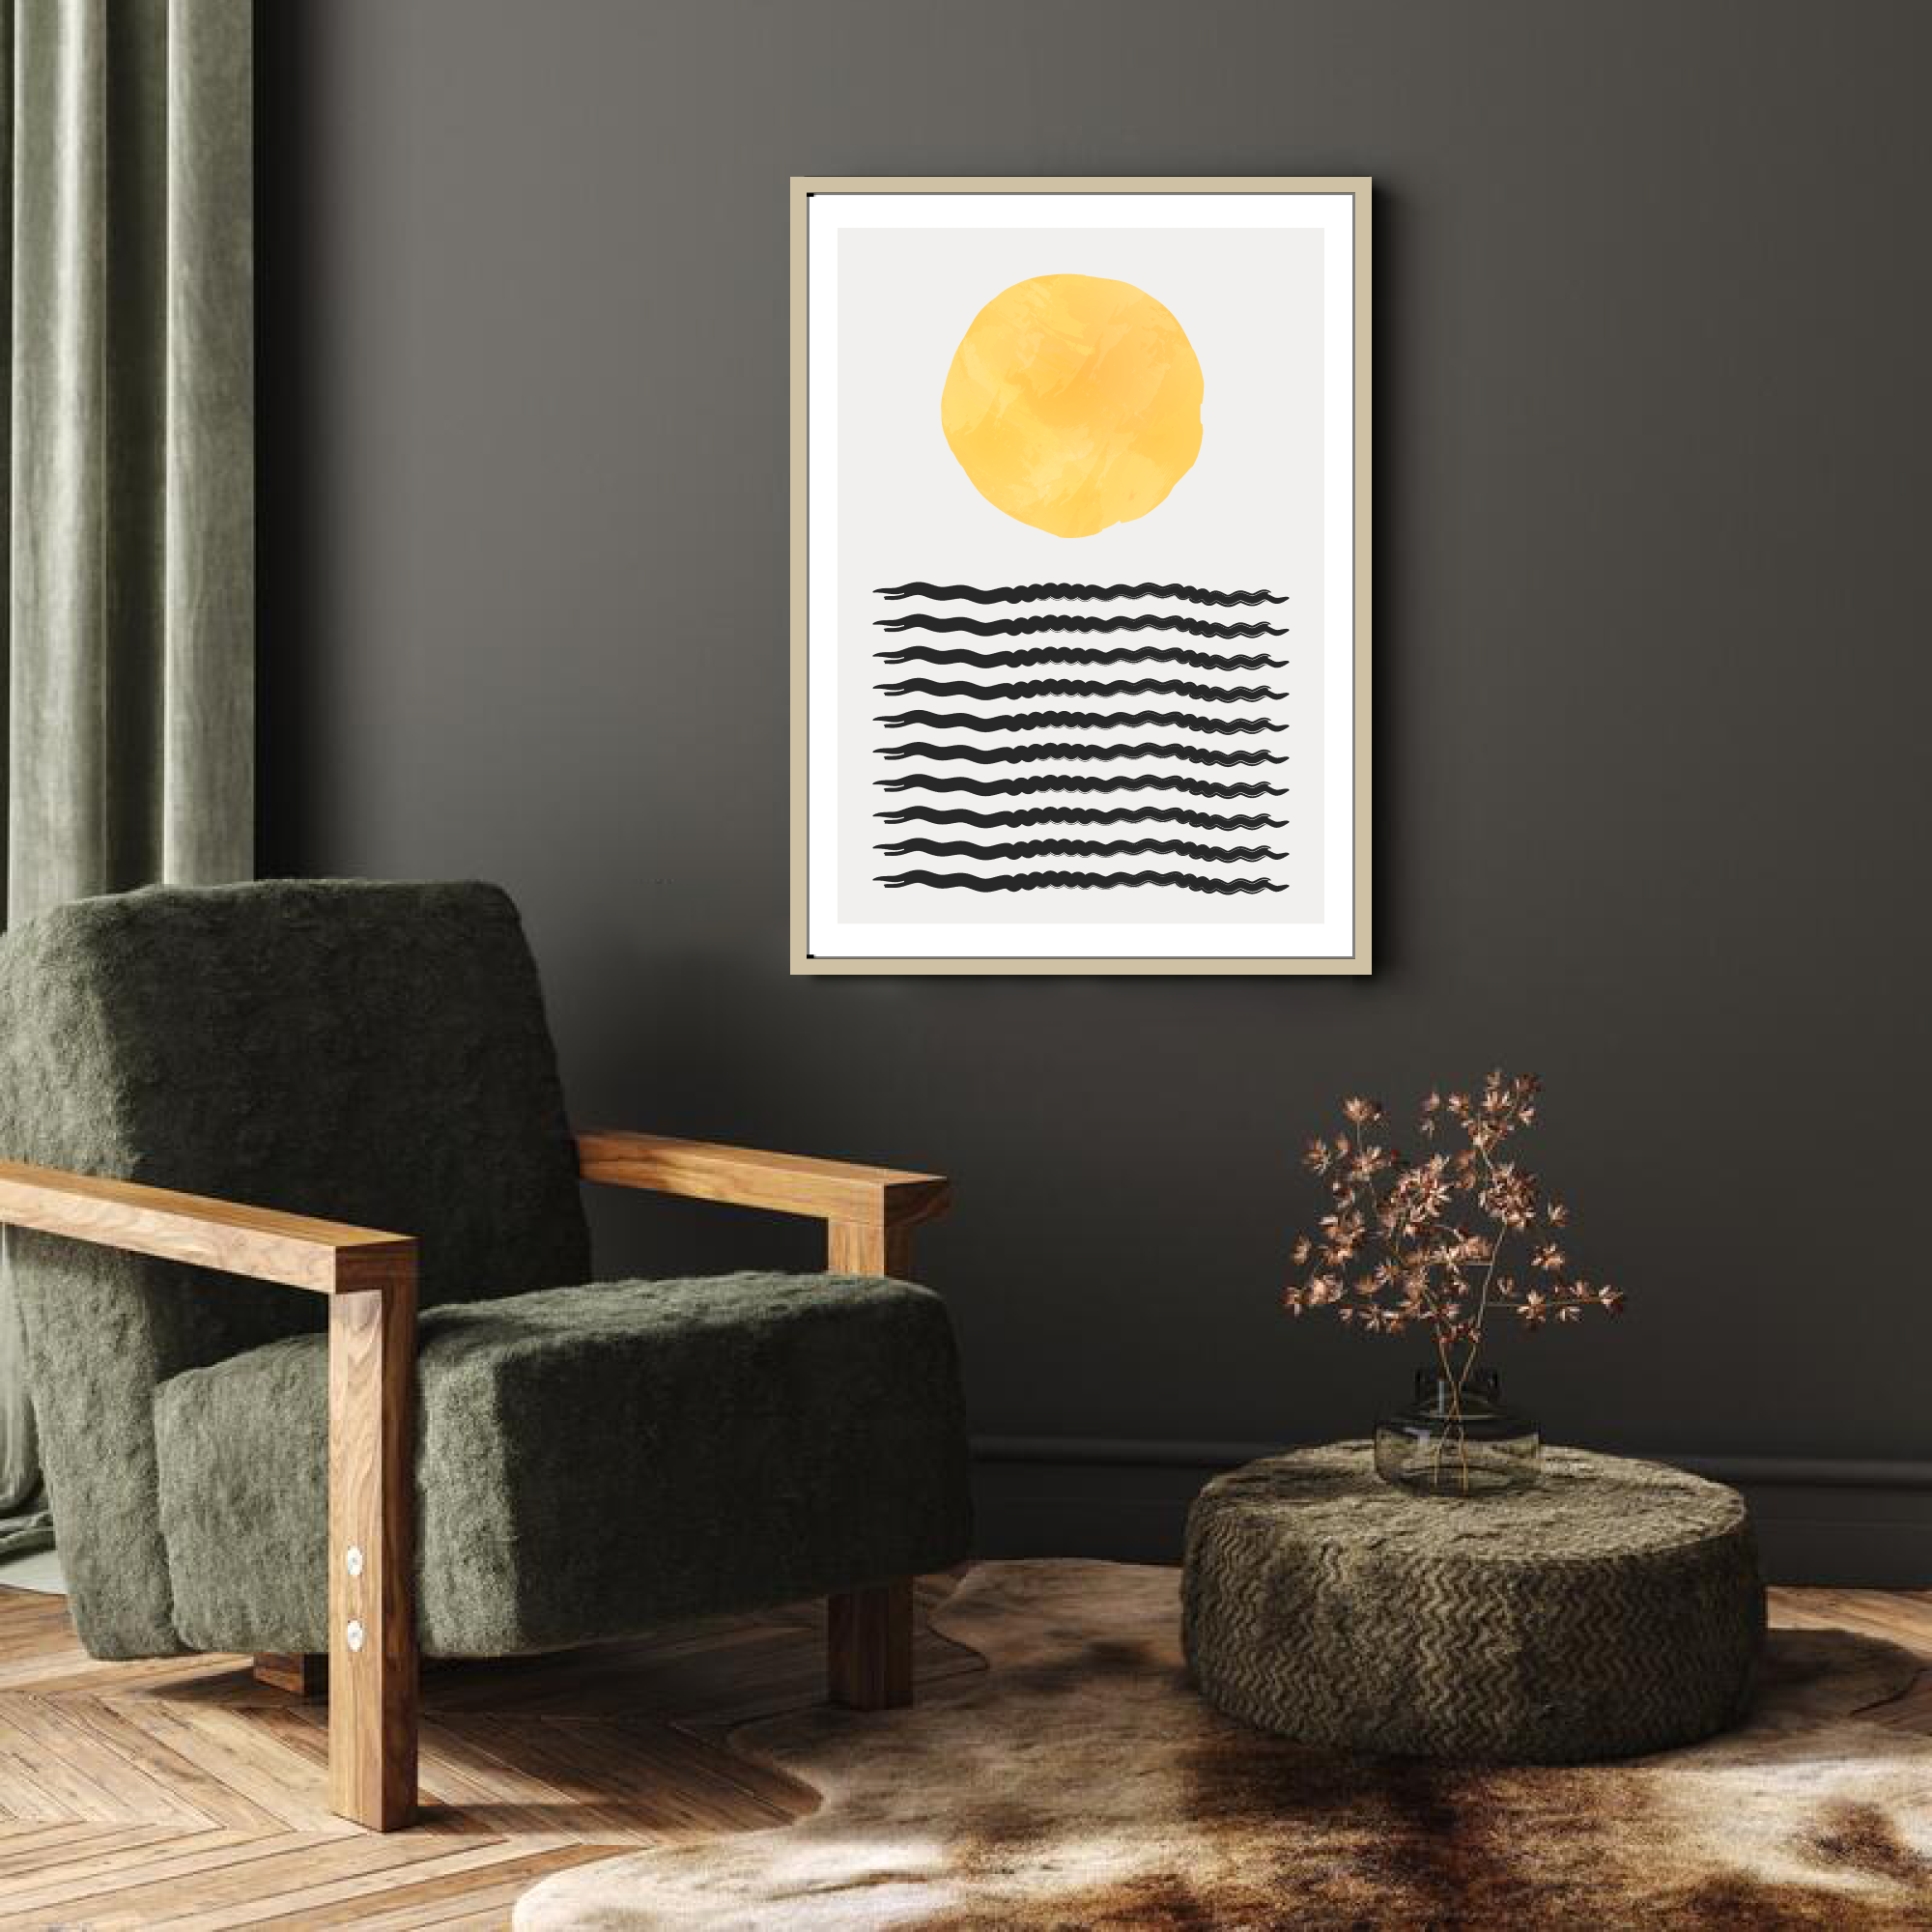 Poster: "Sun Over Sea"